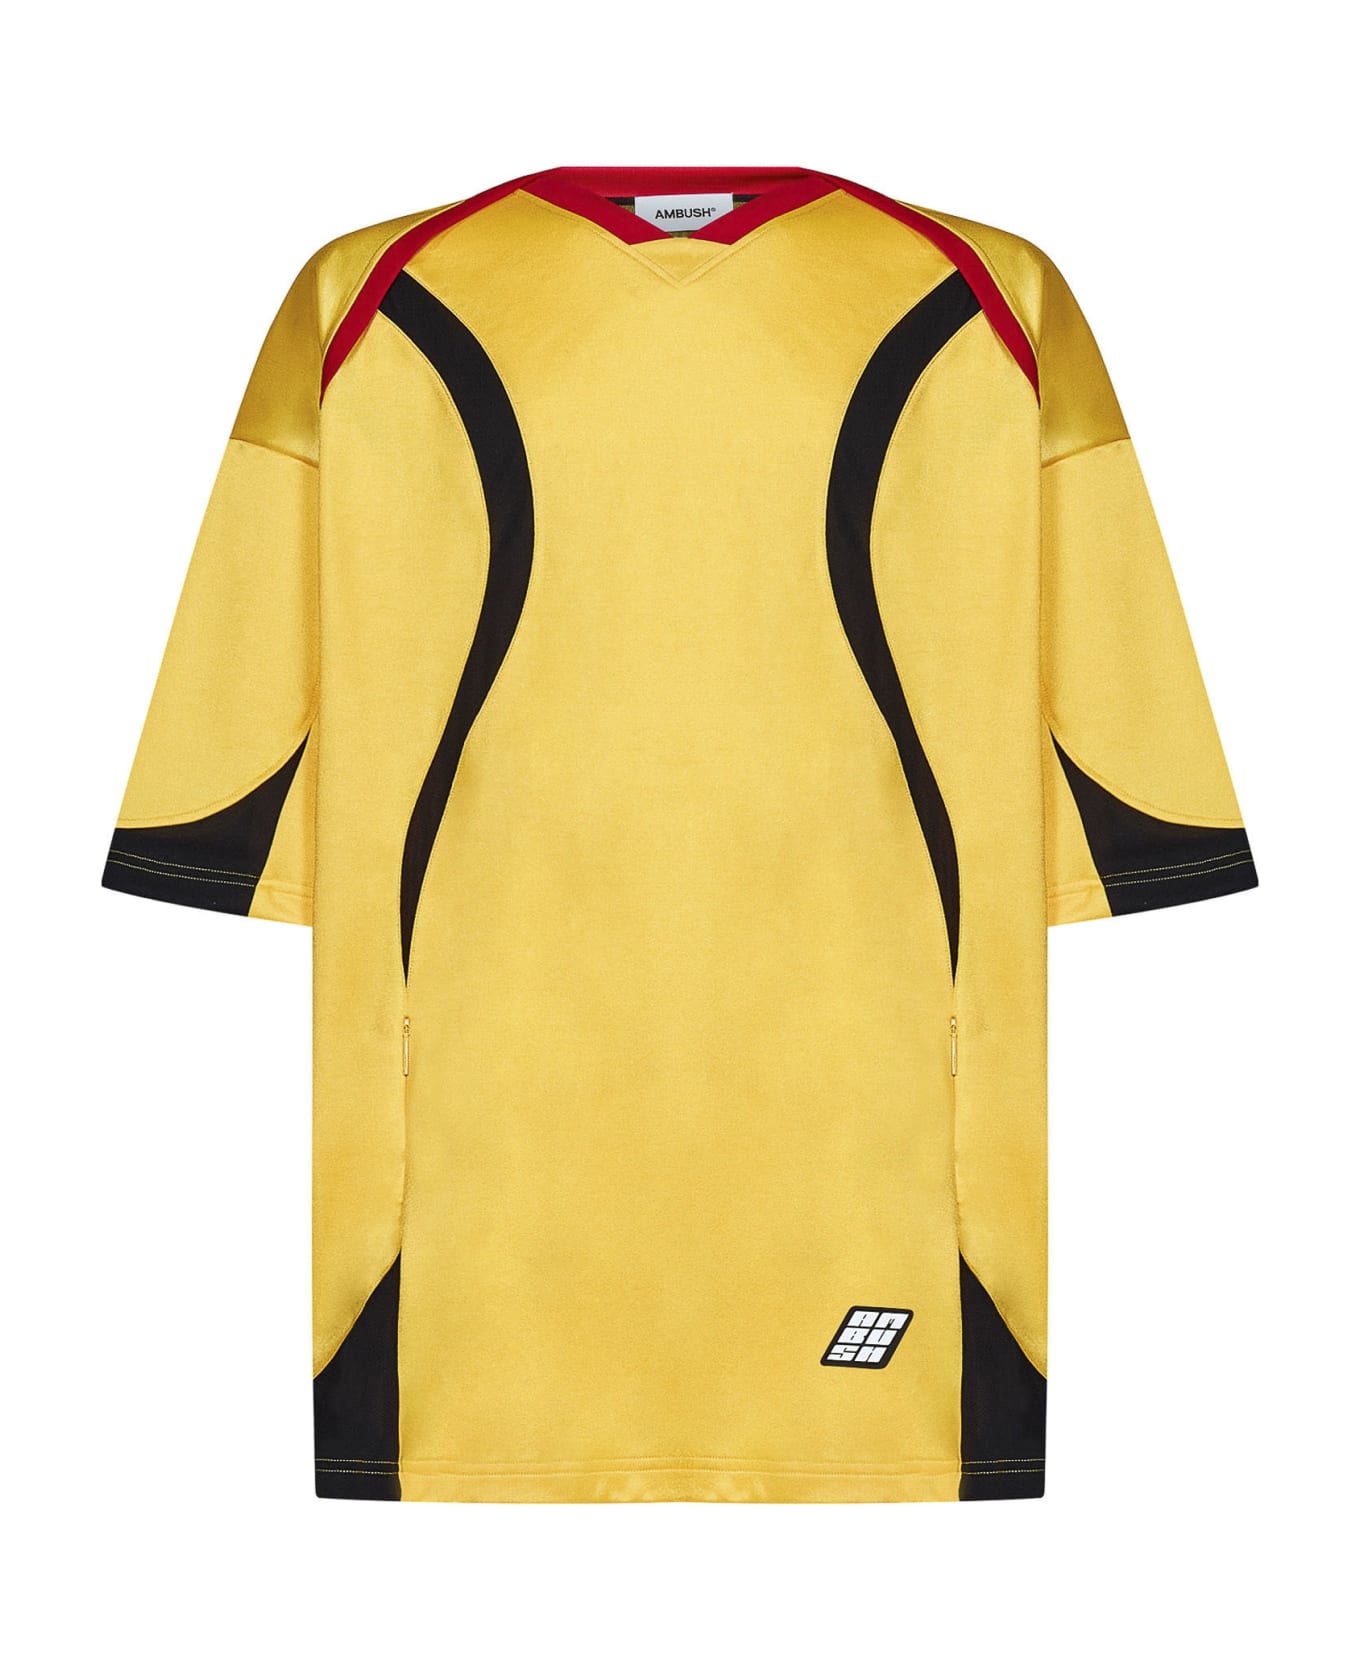 AMBUSH Football T-shirt - Yellow